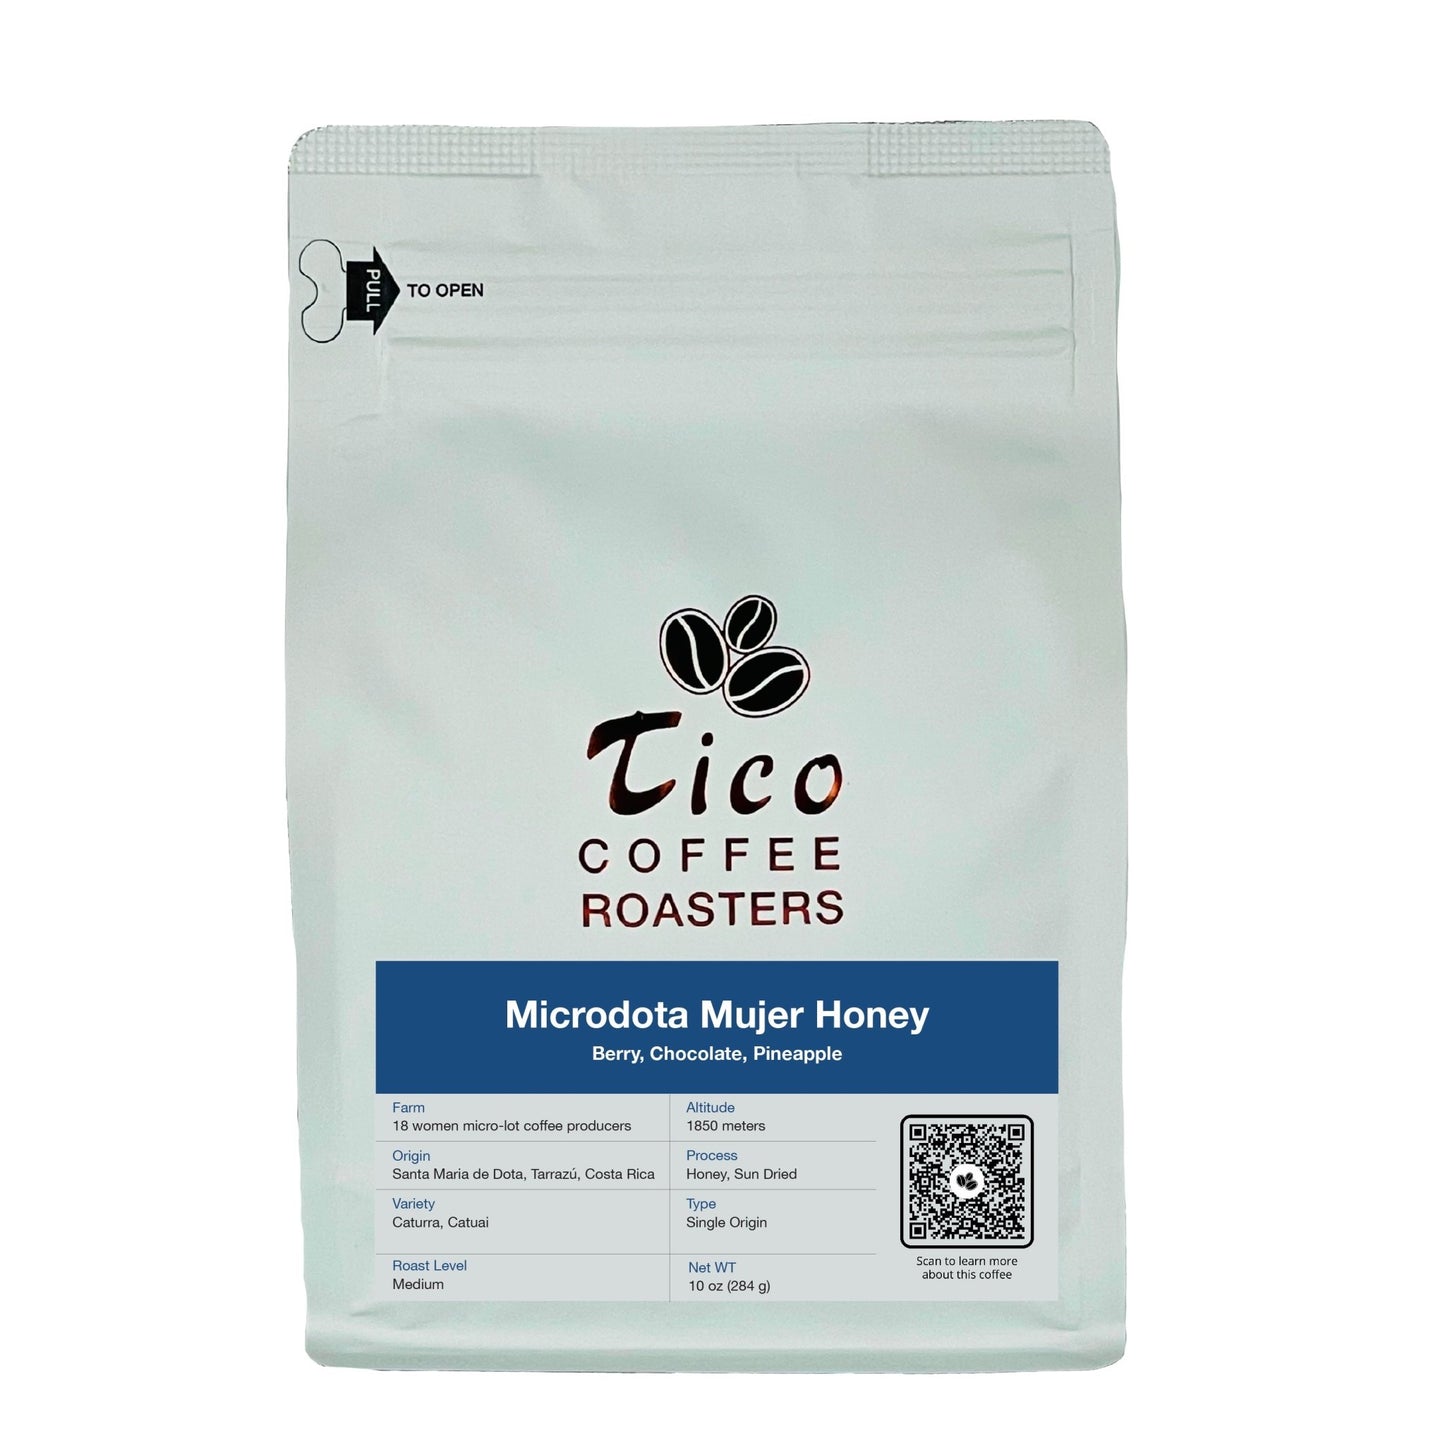 Costa Rica Microdota Mujer Honey - Tico Coffee Roasters